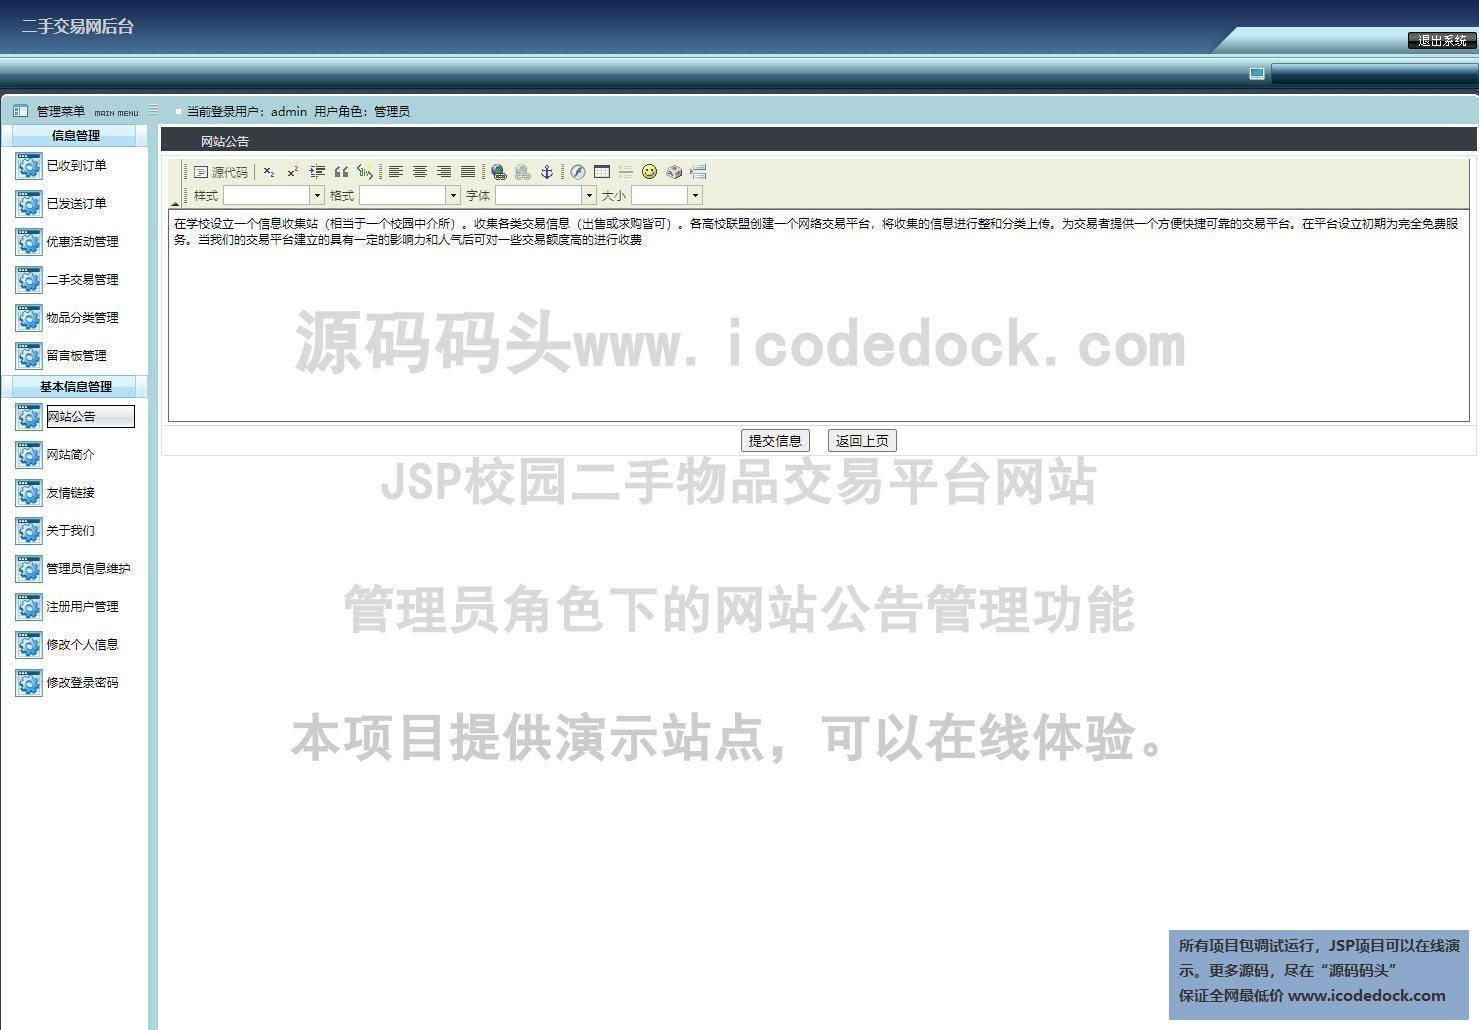 源码码头-JSP校园二手物品交易平台网站-管理员角色-网站公告管理